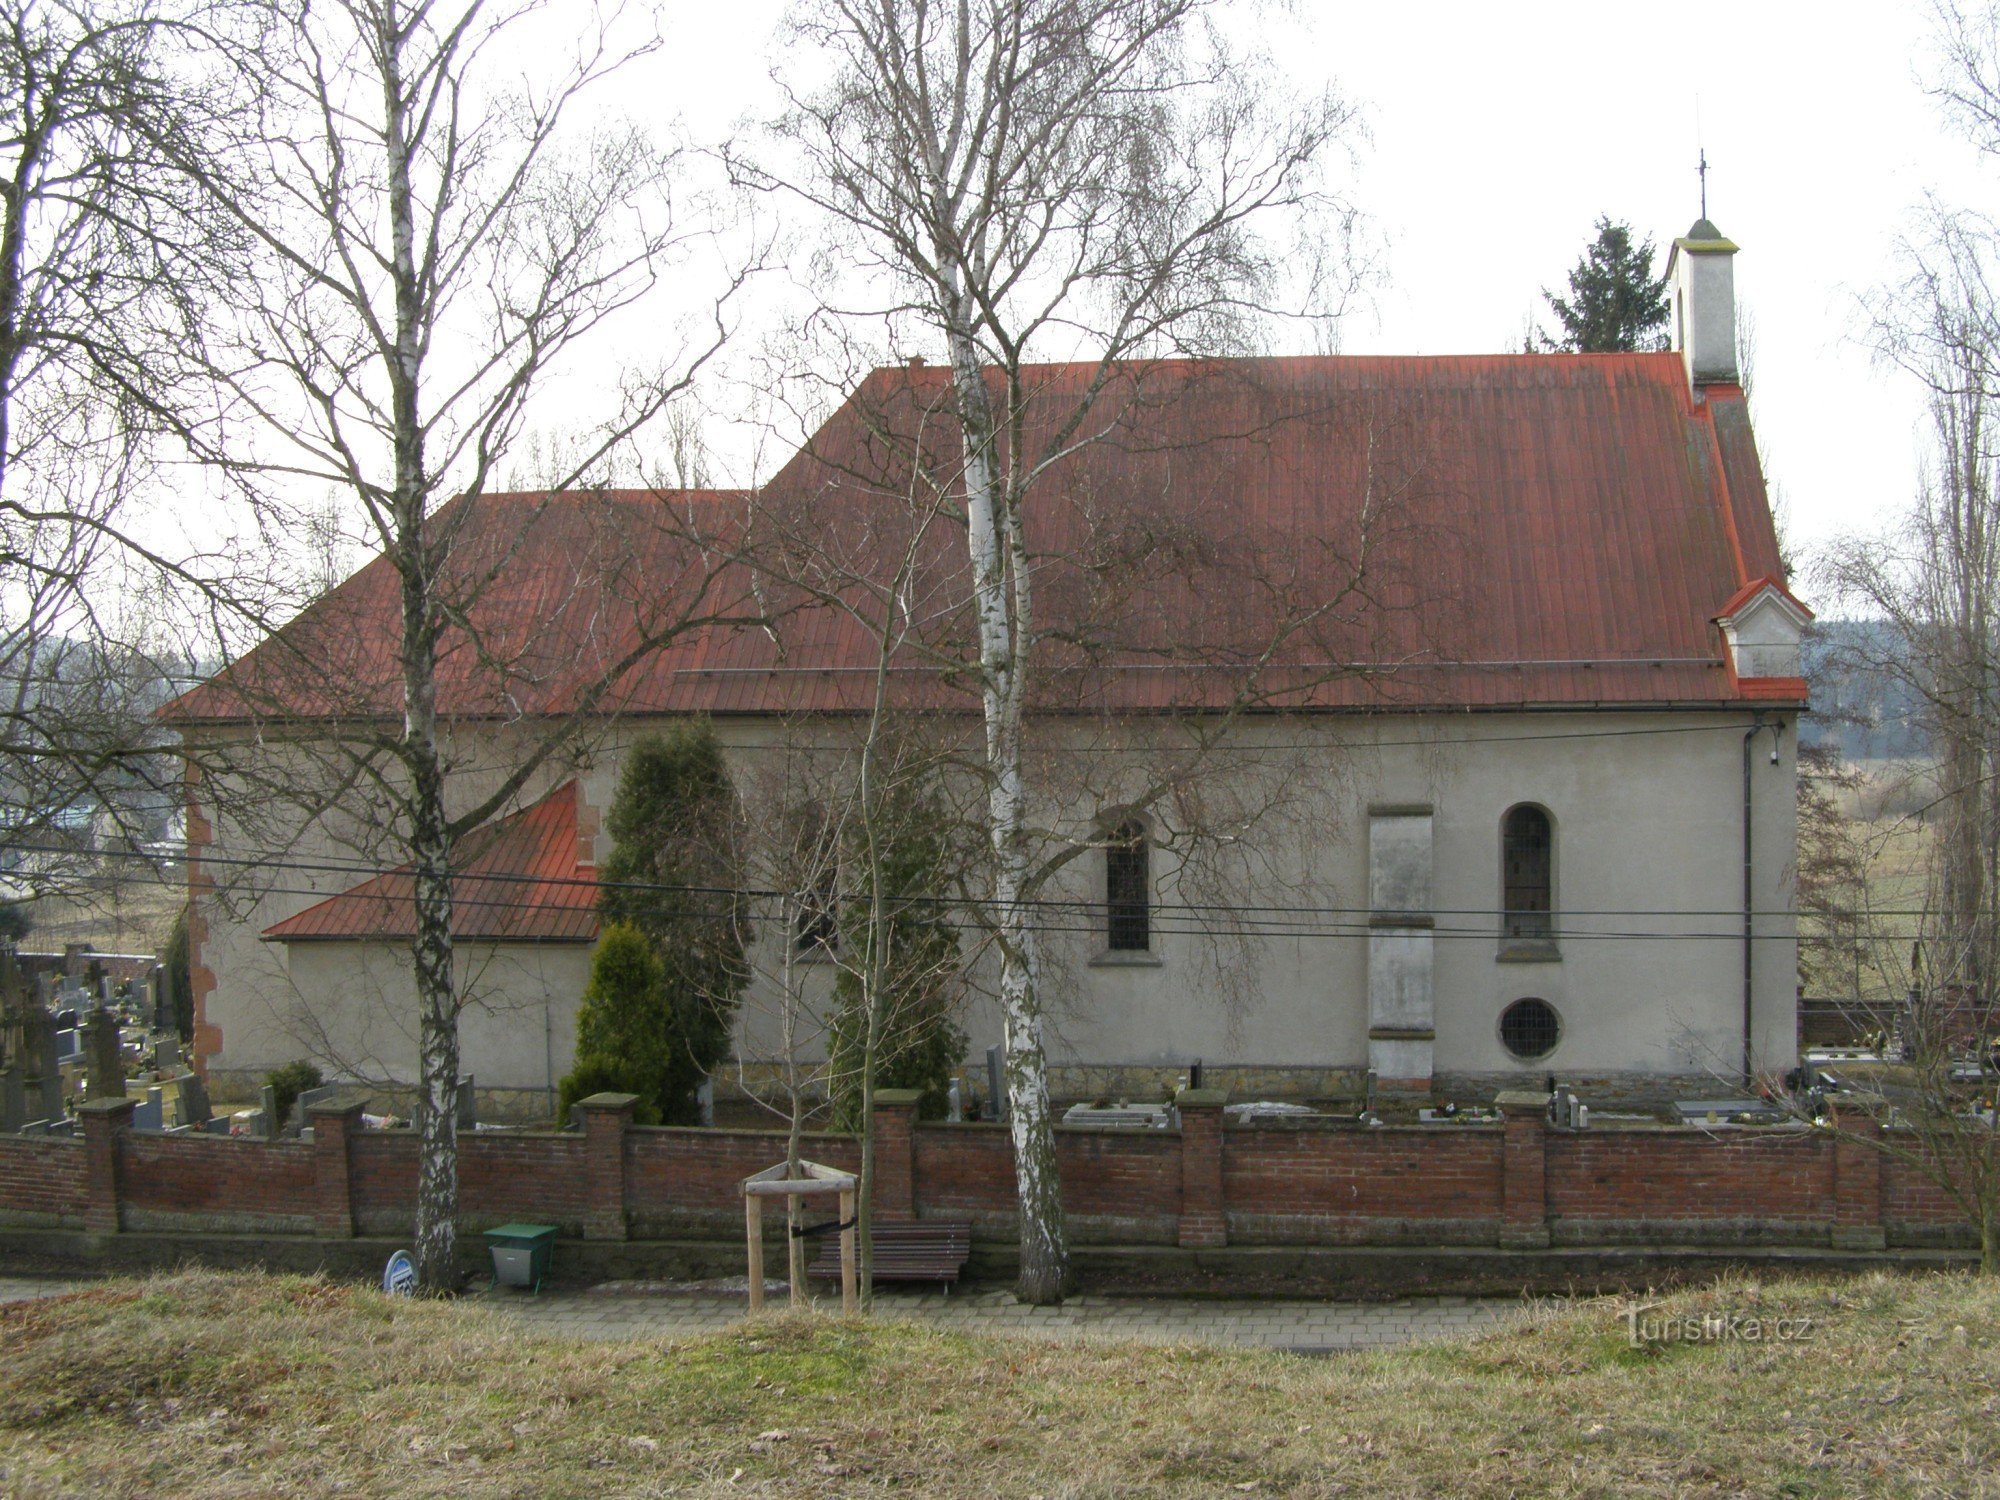 Krčín - church of St. Spirit